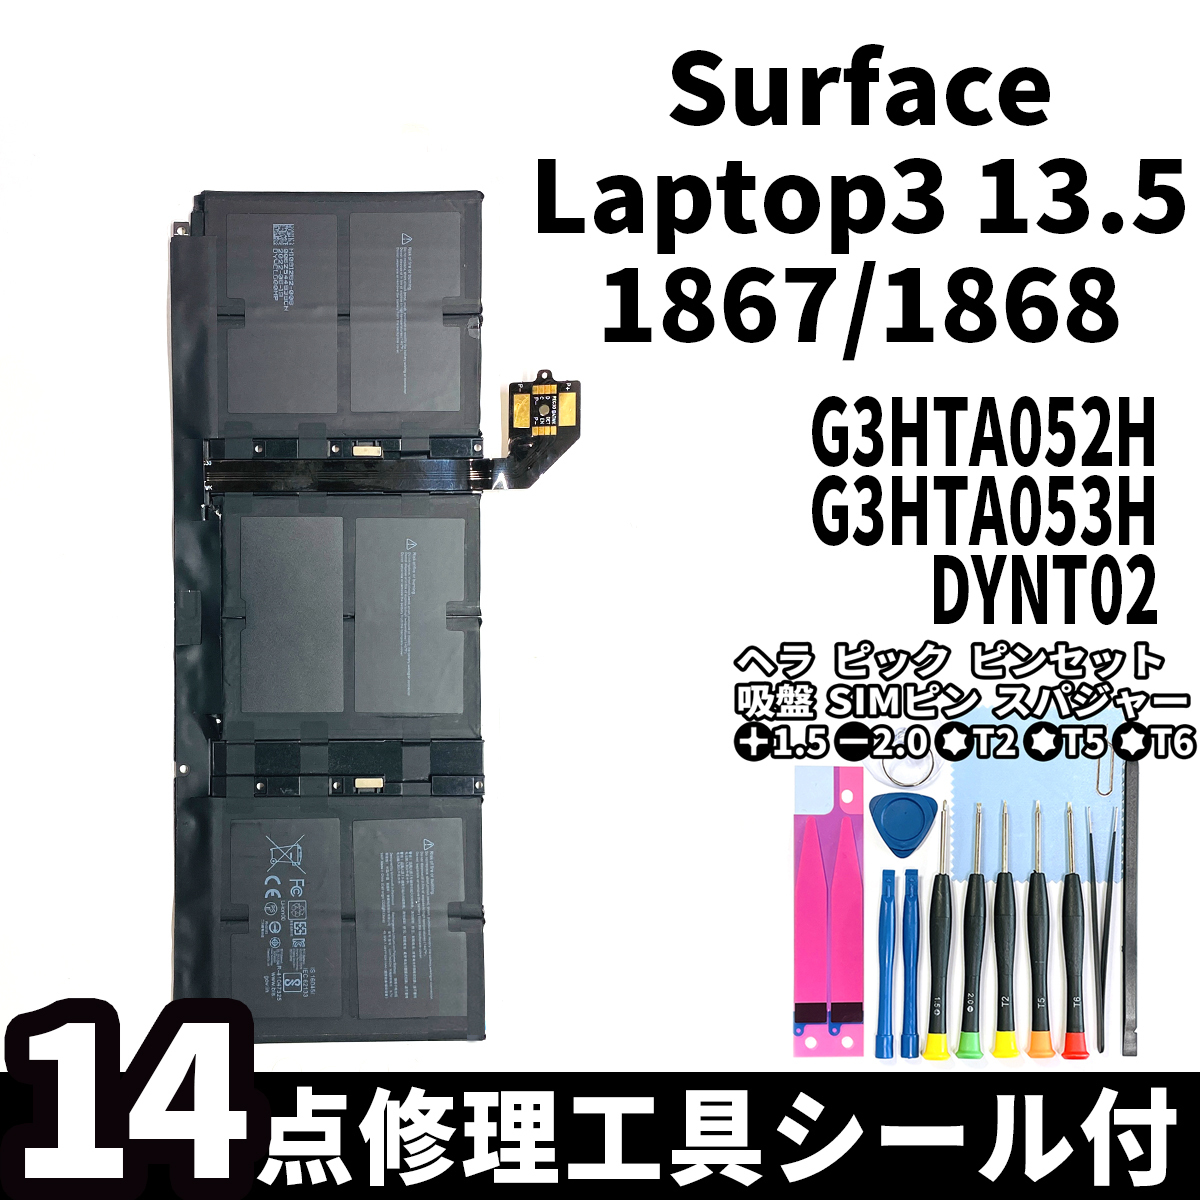 国内即日発送!純正新品!Surface Laptop3 13.5 バッテリー G3HTA052H DYNT02 1867 電池パック交換 本体用内蔵battery 両面テープ 修理工具付